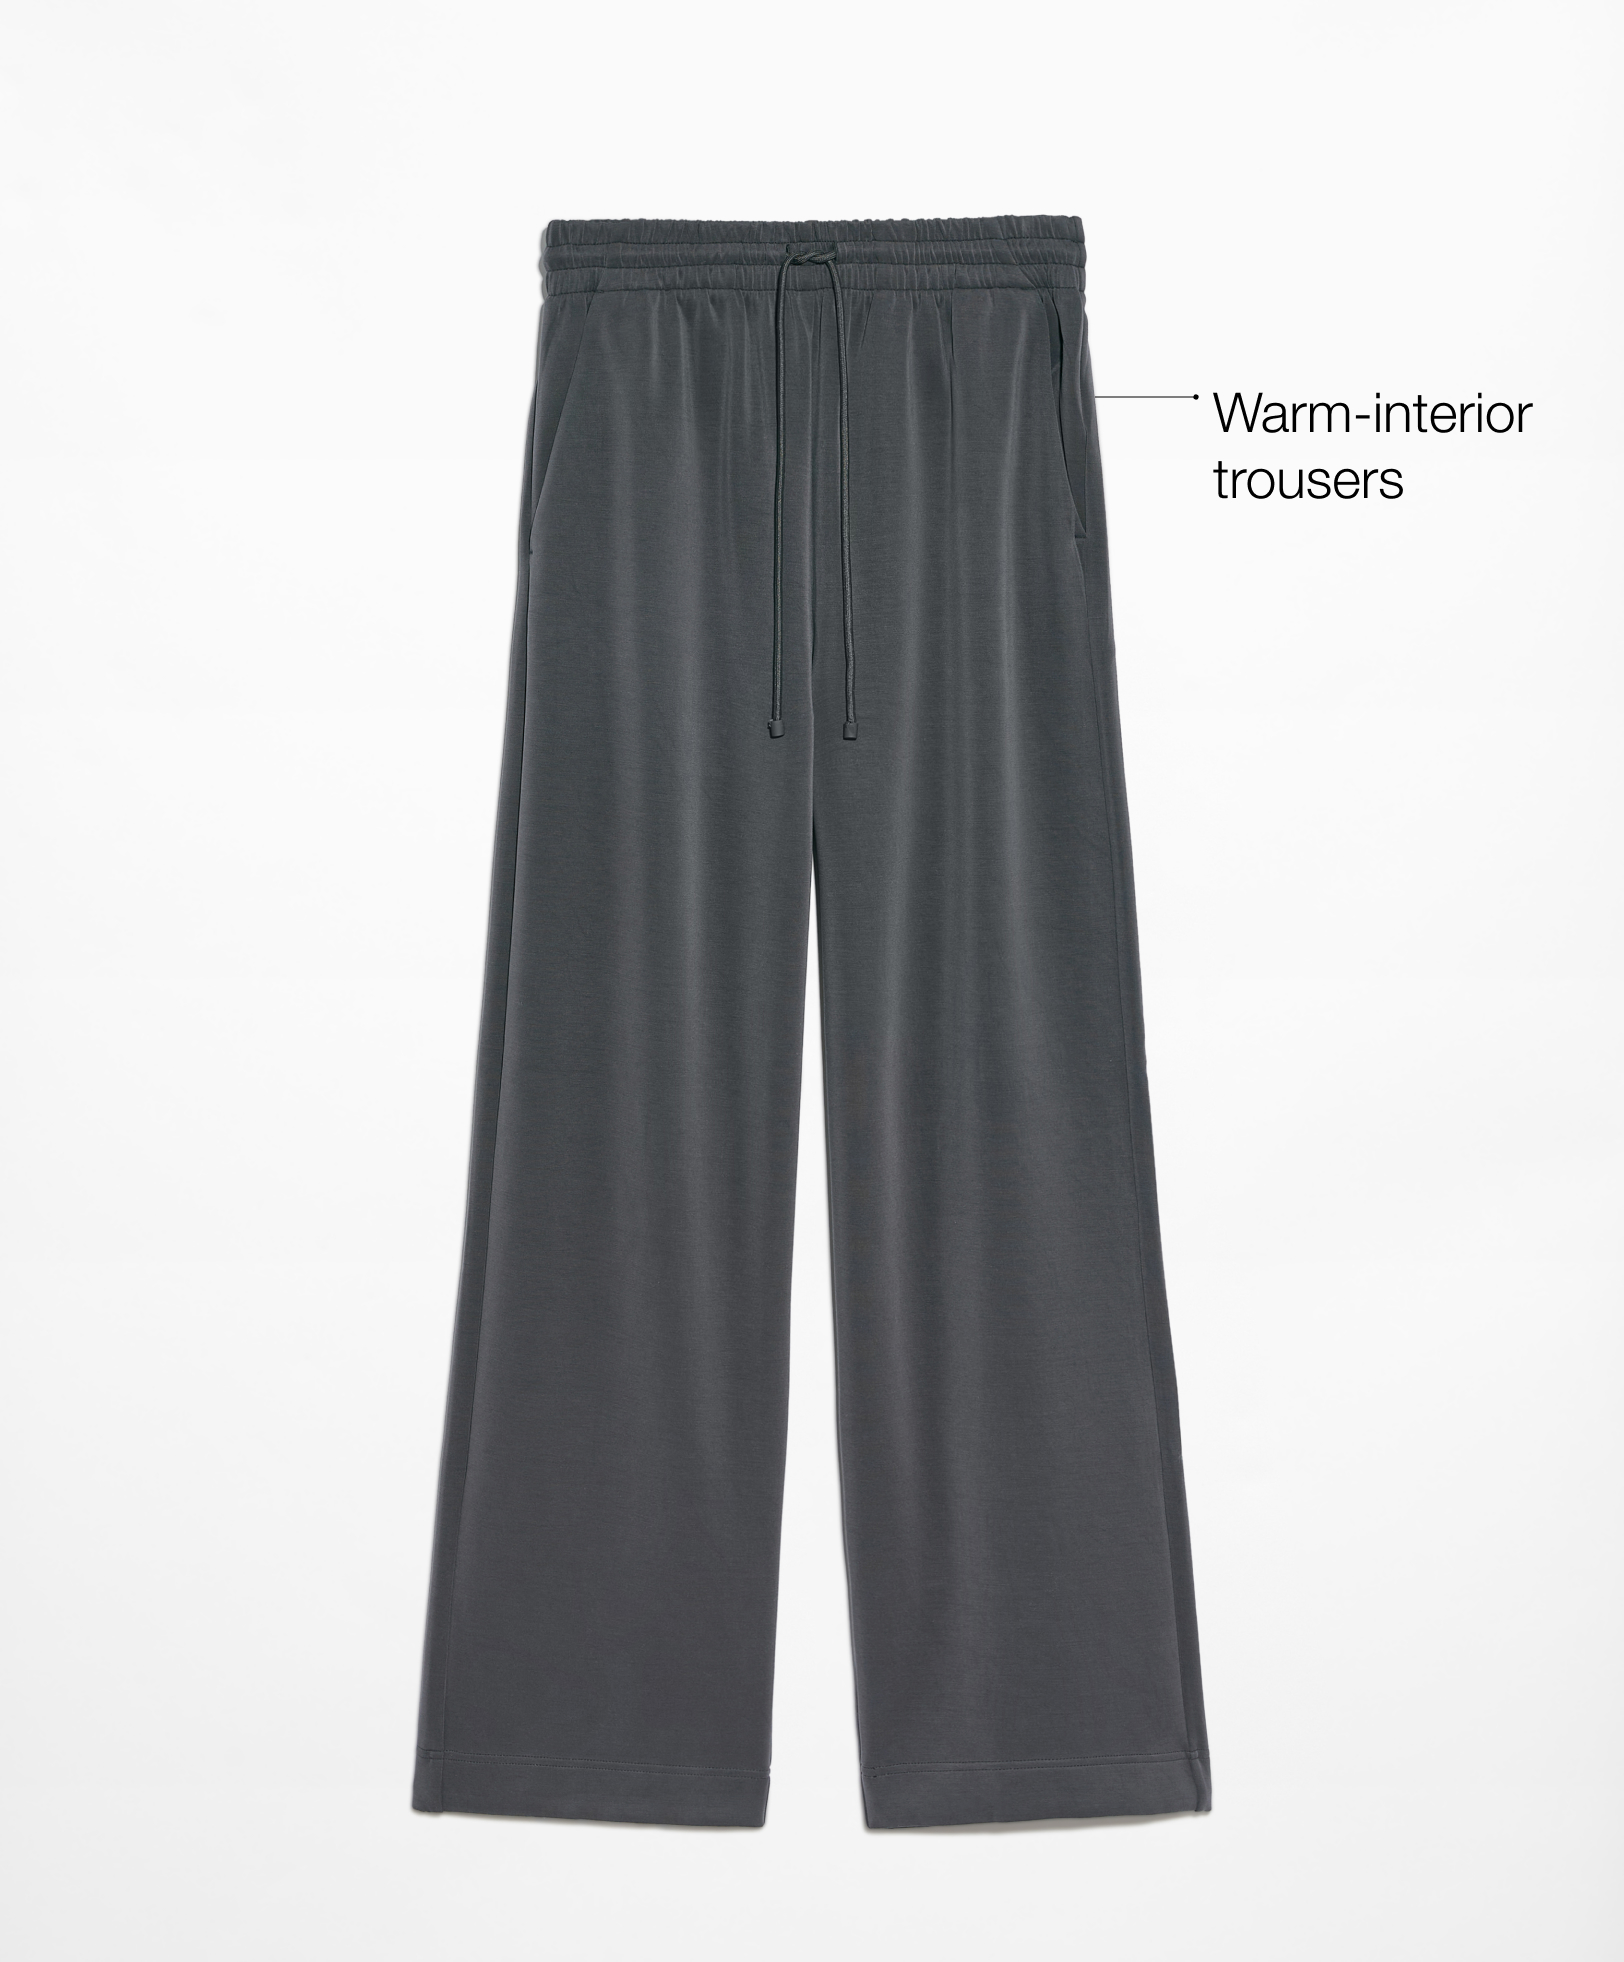 Pantalon droit relaxed contenant du modal et intérieur chaud